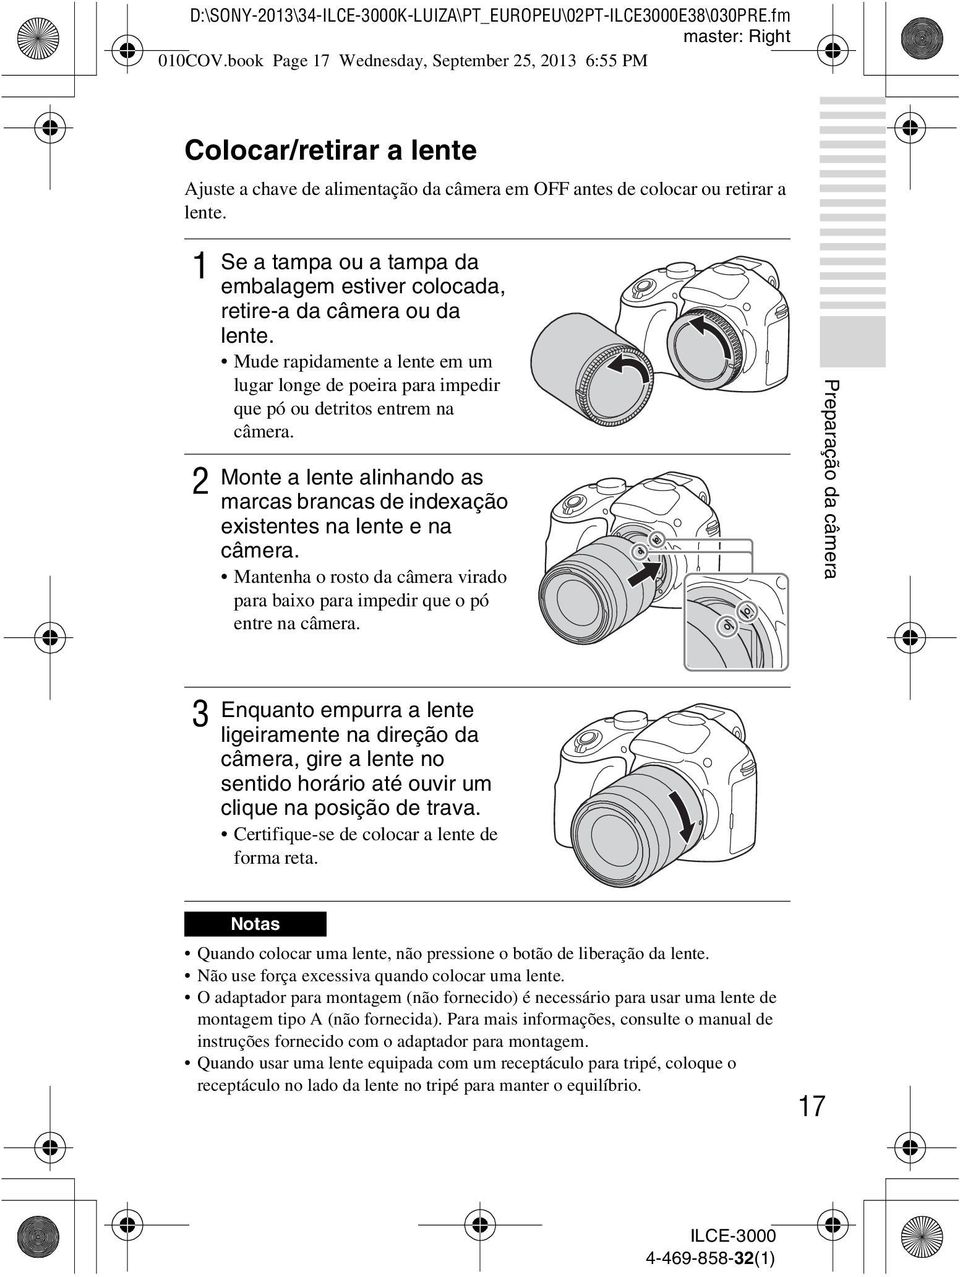 1 2 Se a tampa ou a tampa da embalagem estiver colocada, retire-a da câmera ou da lente. Mude rapidamente a lente em um lugar longe de poeira para impedir que pó ou detritos entrem na câmera.